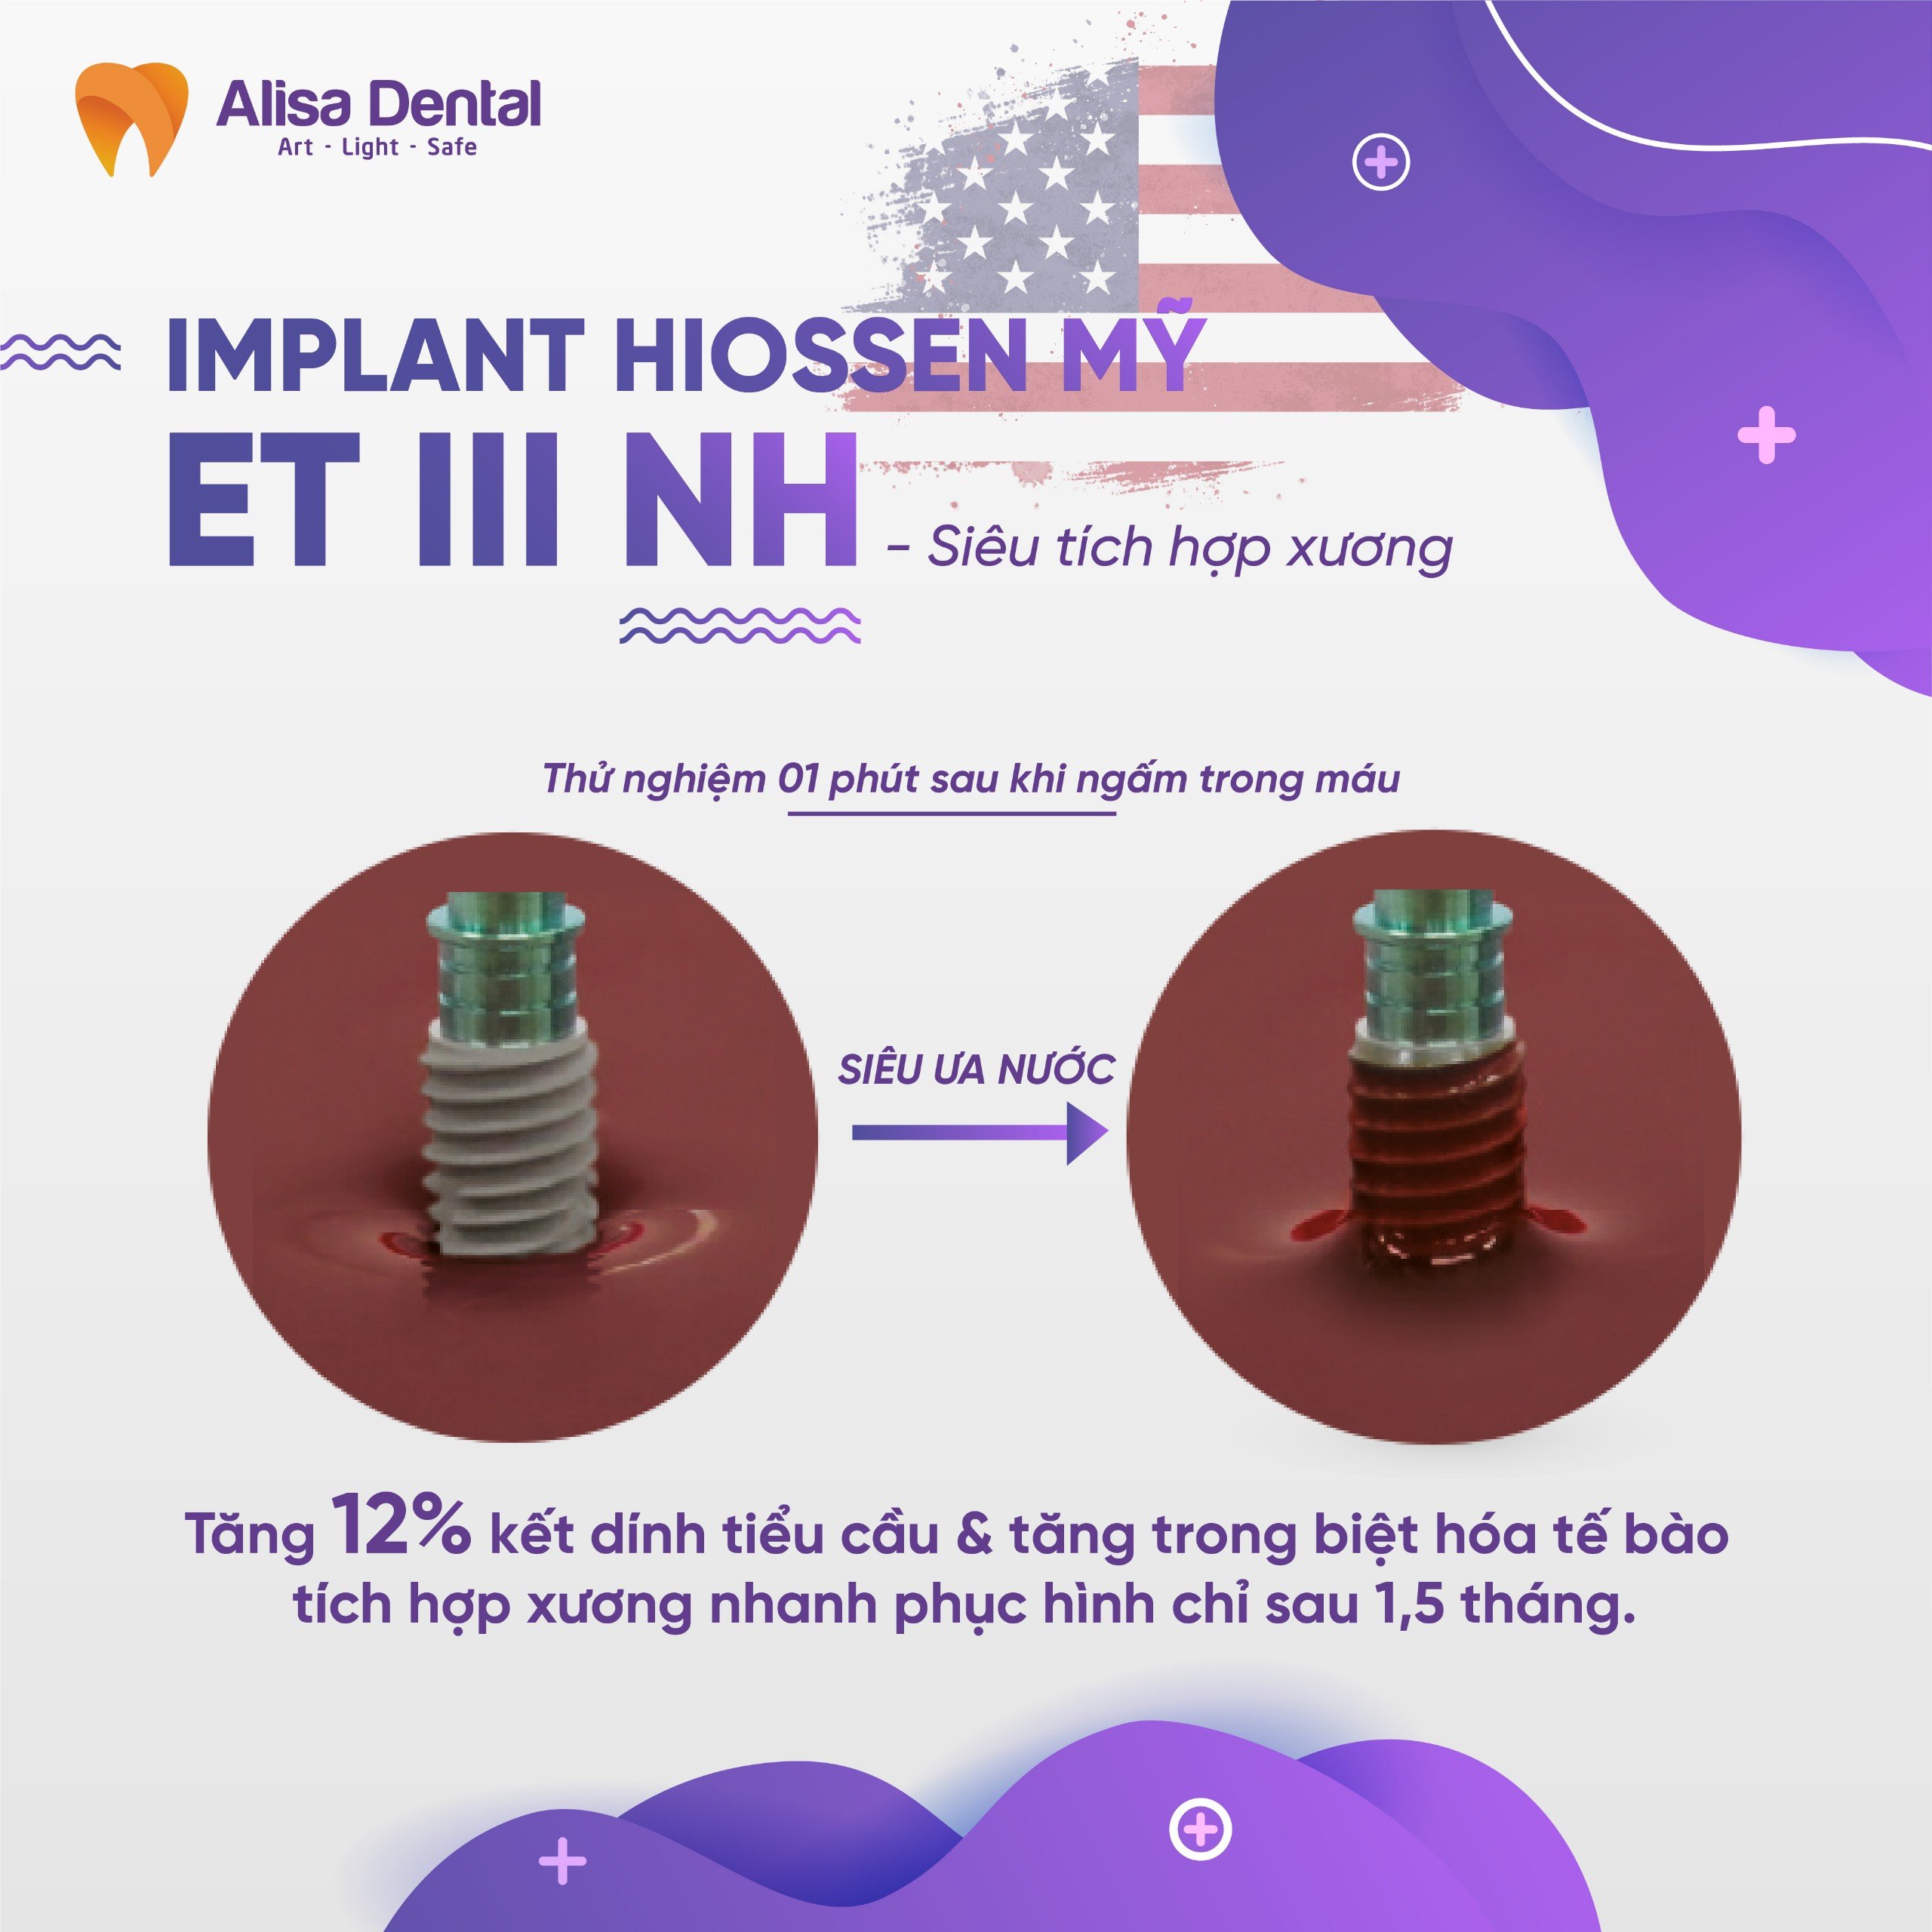 Implant Hiossen ET III NH siêu tích hợp xương thế hệ mới